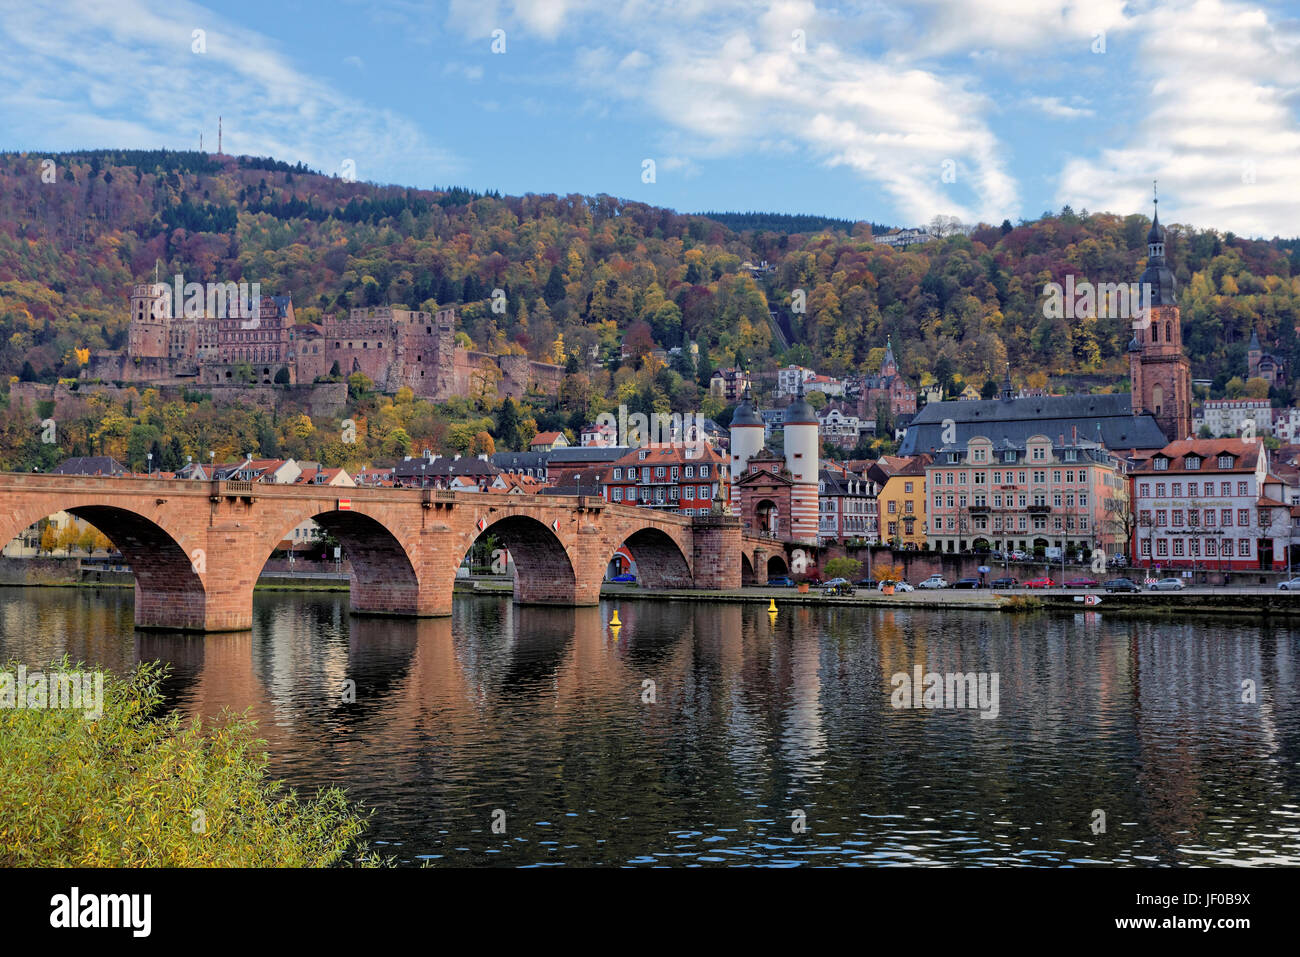 Heidelberg in autumn Stock Photo